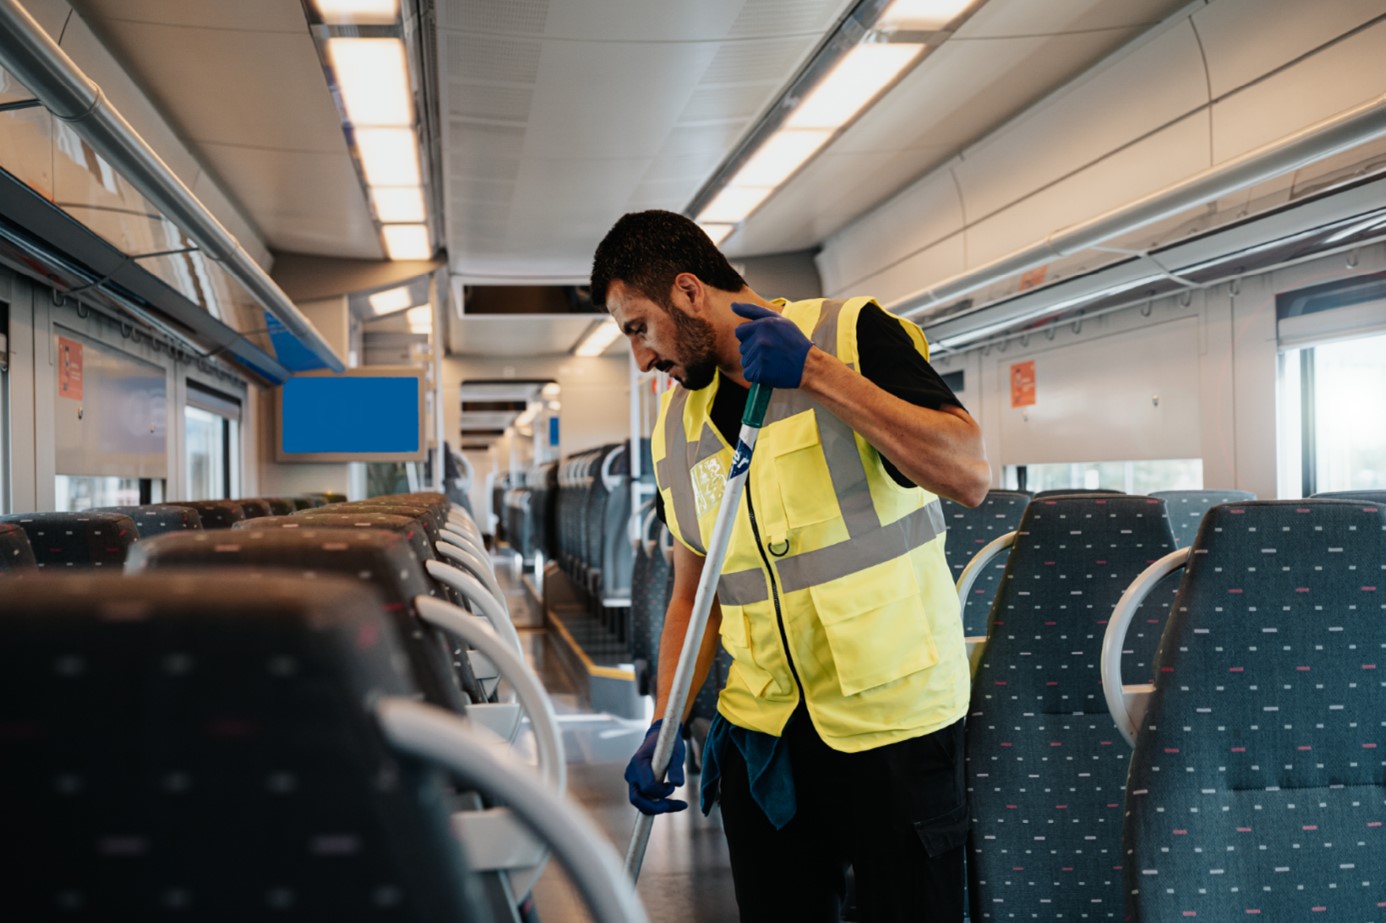 Vacature inspecteur schoonmaak treinen in Brussel (Schaarbeek of Vorst) - Mobility Masters